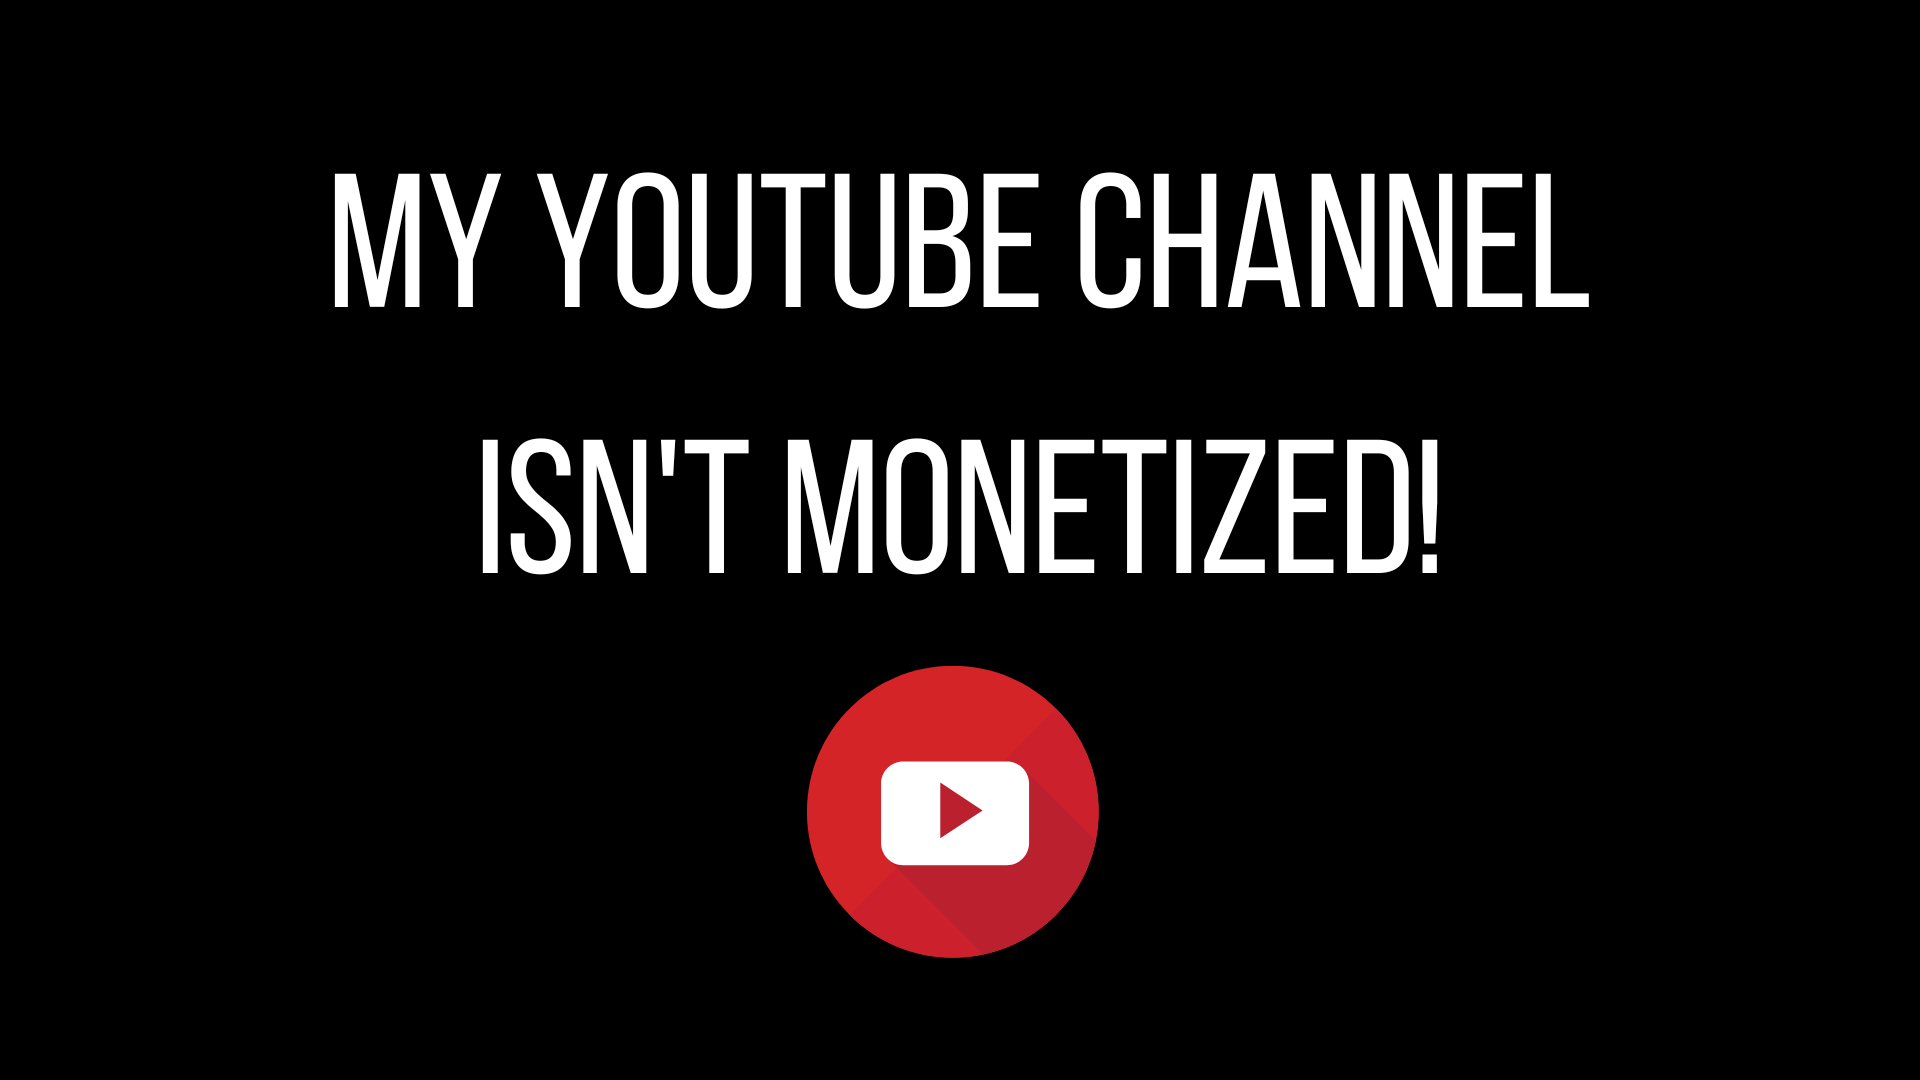 My YouTube channel isn't monetized!